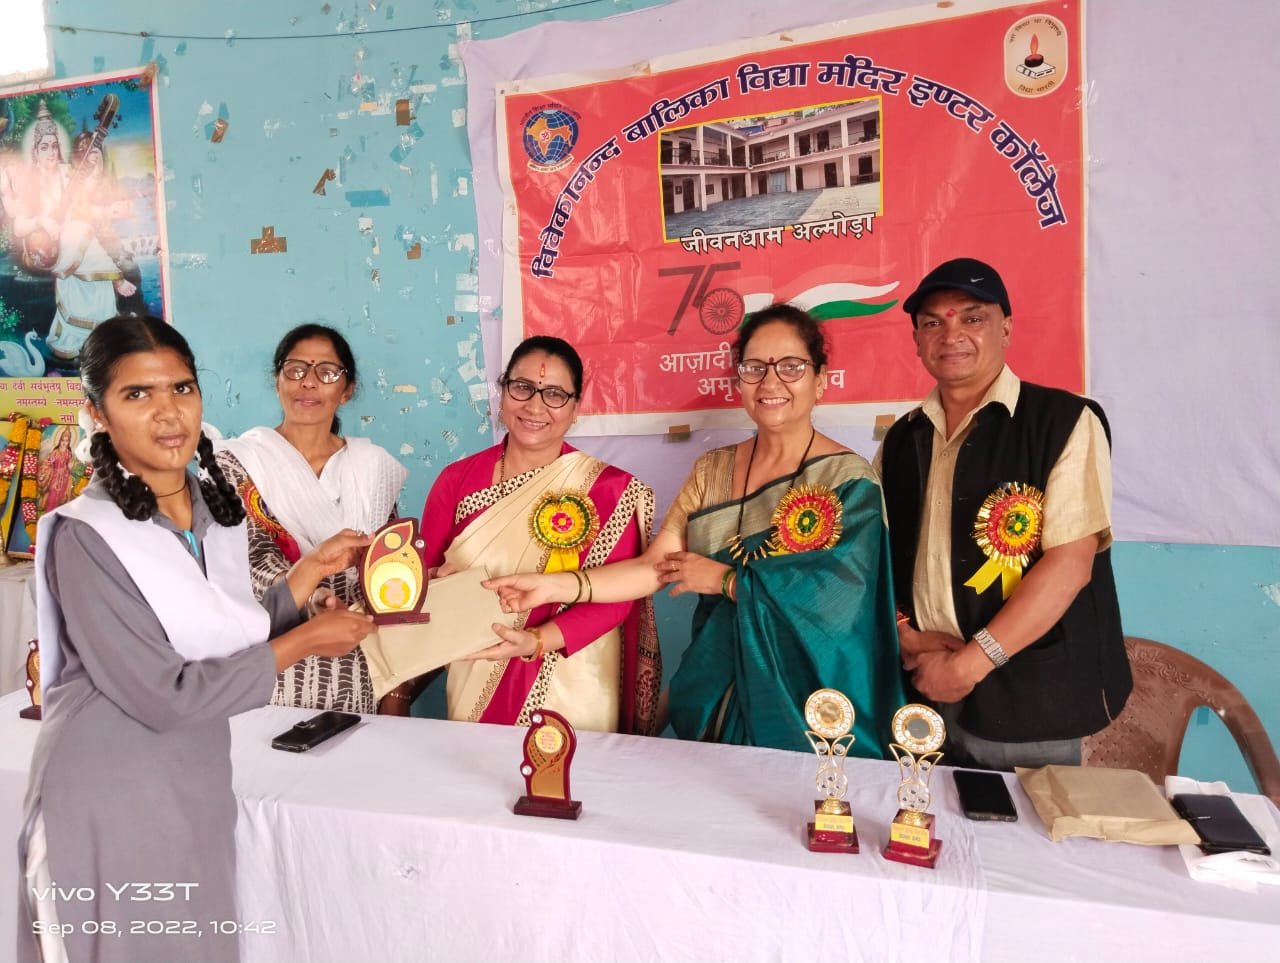 अल्मोड़ा: ग्रीनहिल्स  संस्था द्वारा हिमालय के योगदान’ विषय पर जागरूकता फैलाने के लिए विभिन्न विद्यालयों में किये गए कार्यक्रम